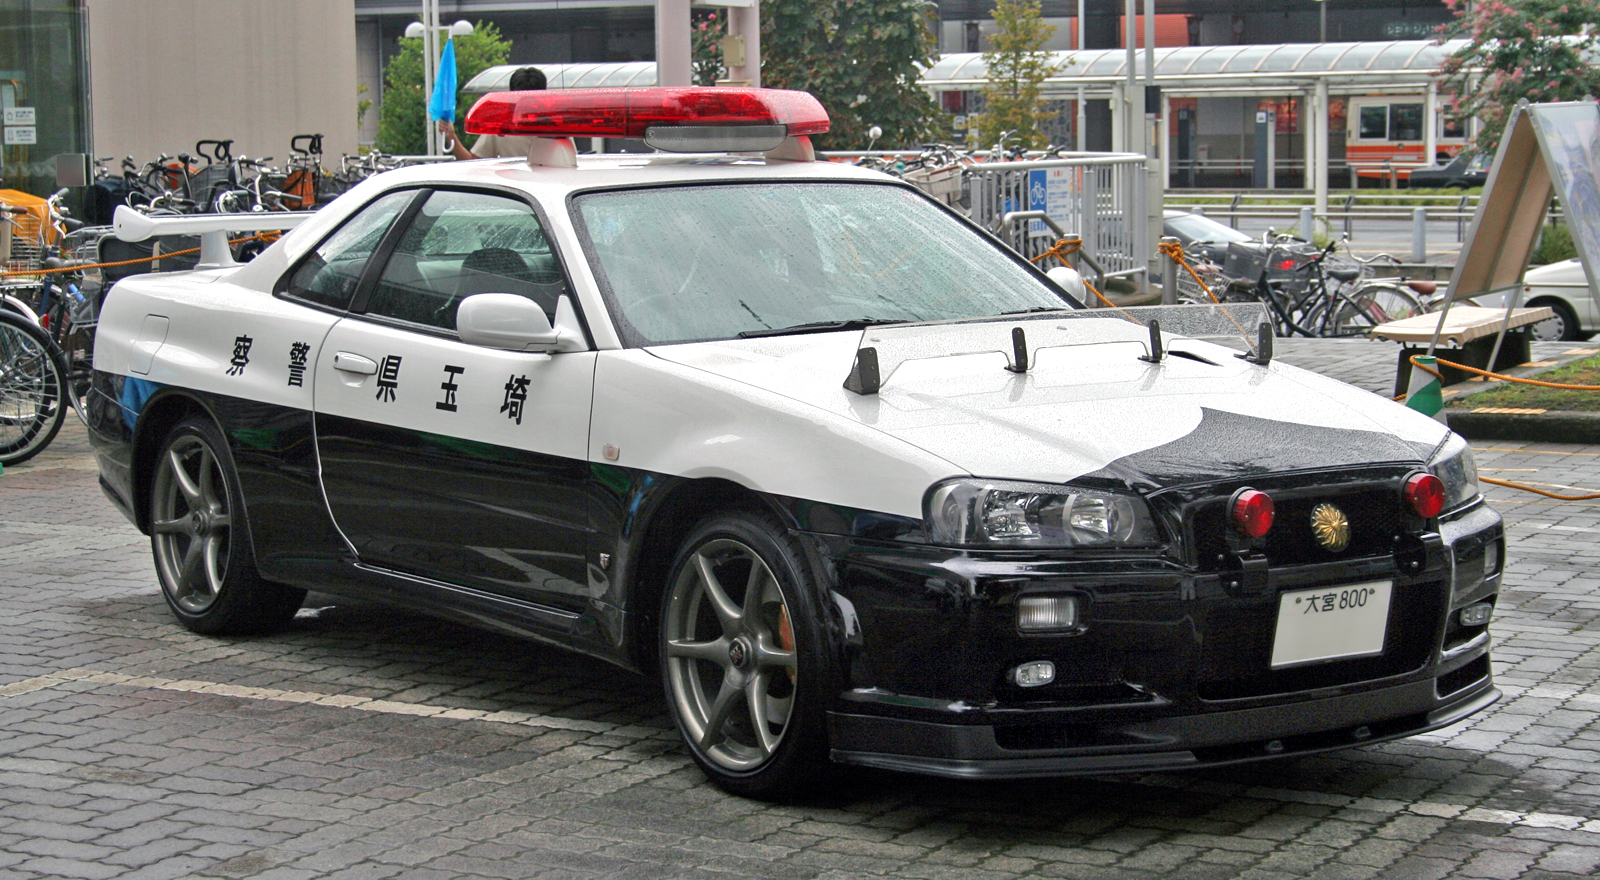 skyline_gtr_police_car.jpg